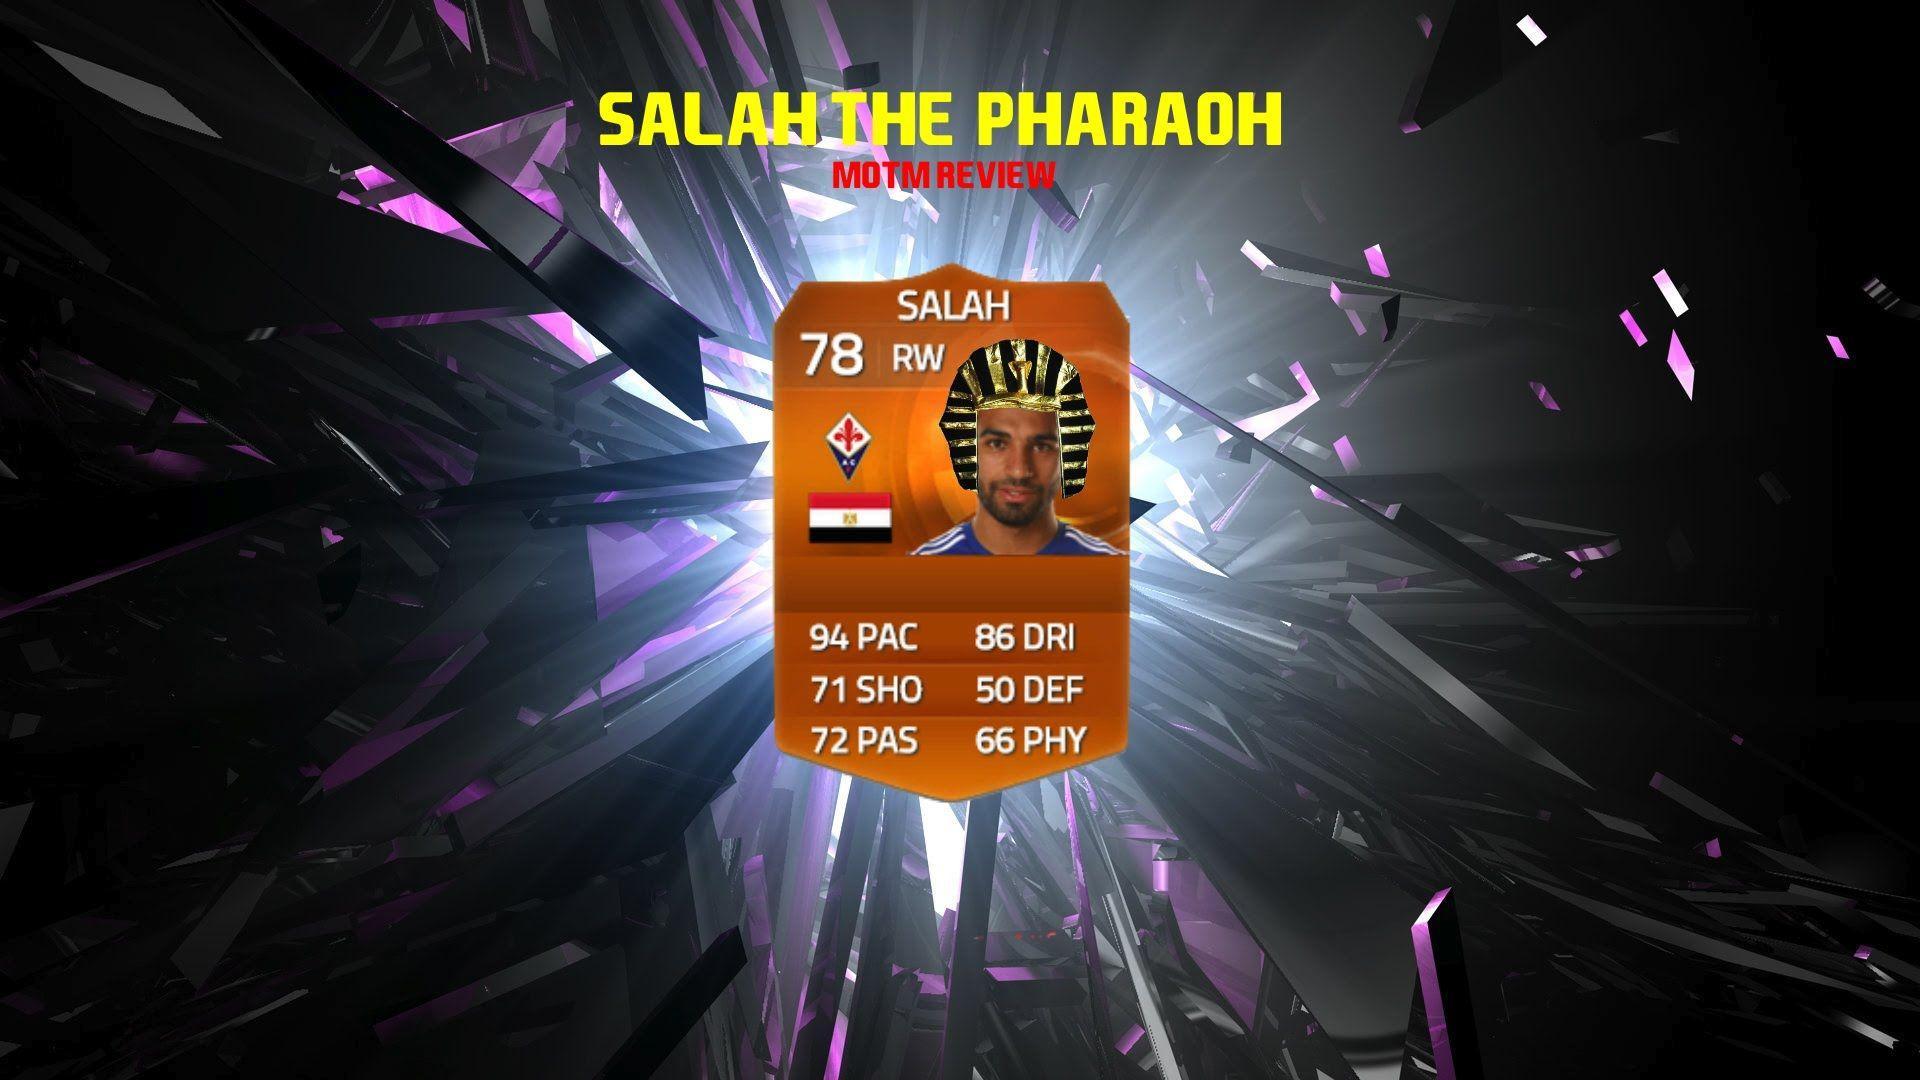 Fifa 15 Mohammed Salah MOTM! The Pharaoh ●REVIEW●